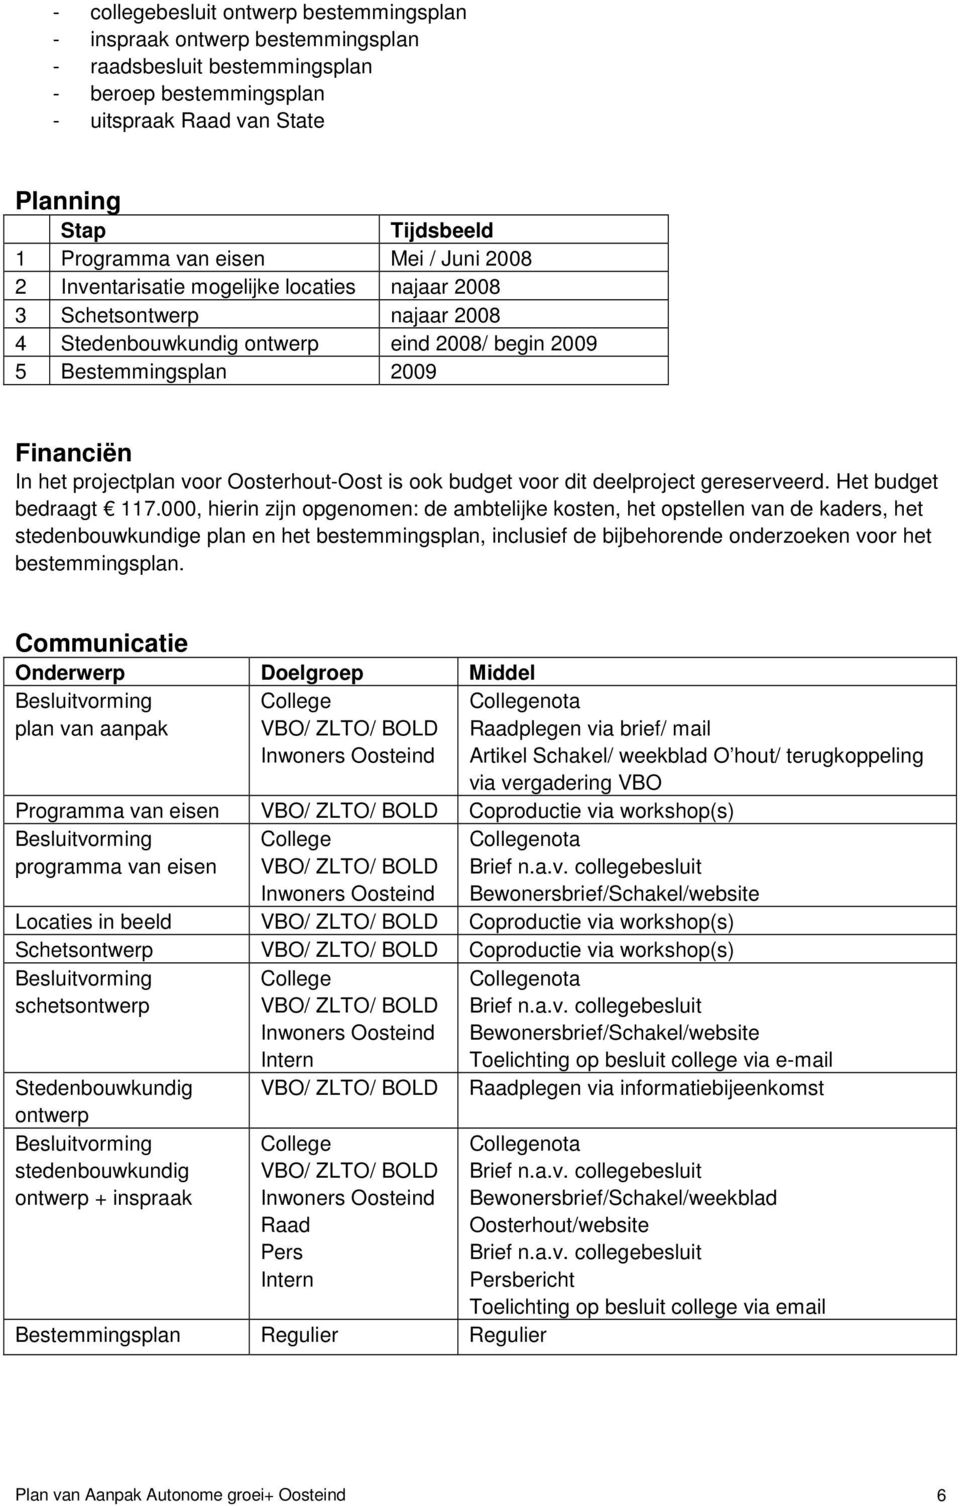 voor Oosterhout-Oost is ook budget voor dit deelproject gereserveerd. Het budget bedraagt 117.